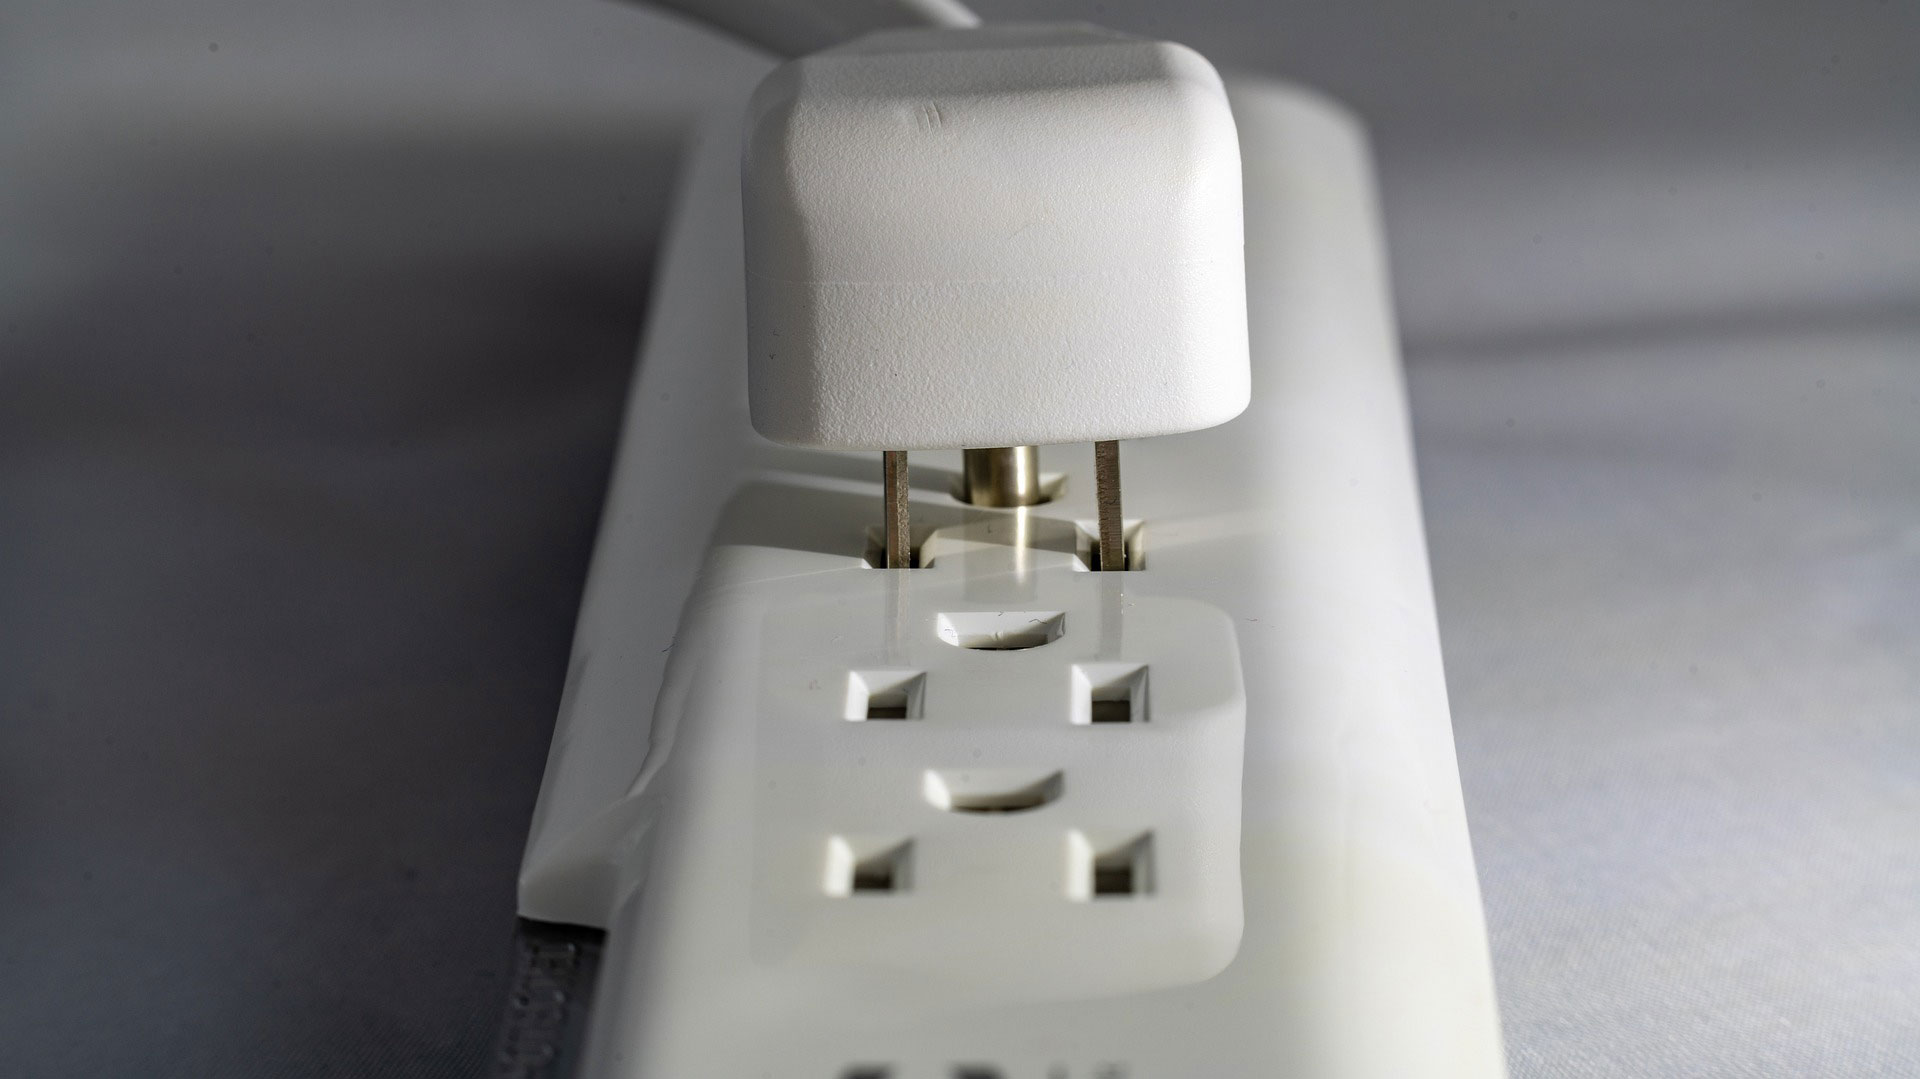 plug an aircon into an extension cord